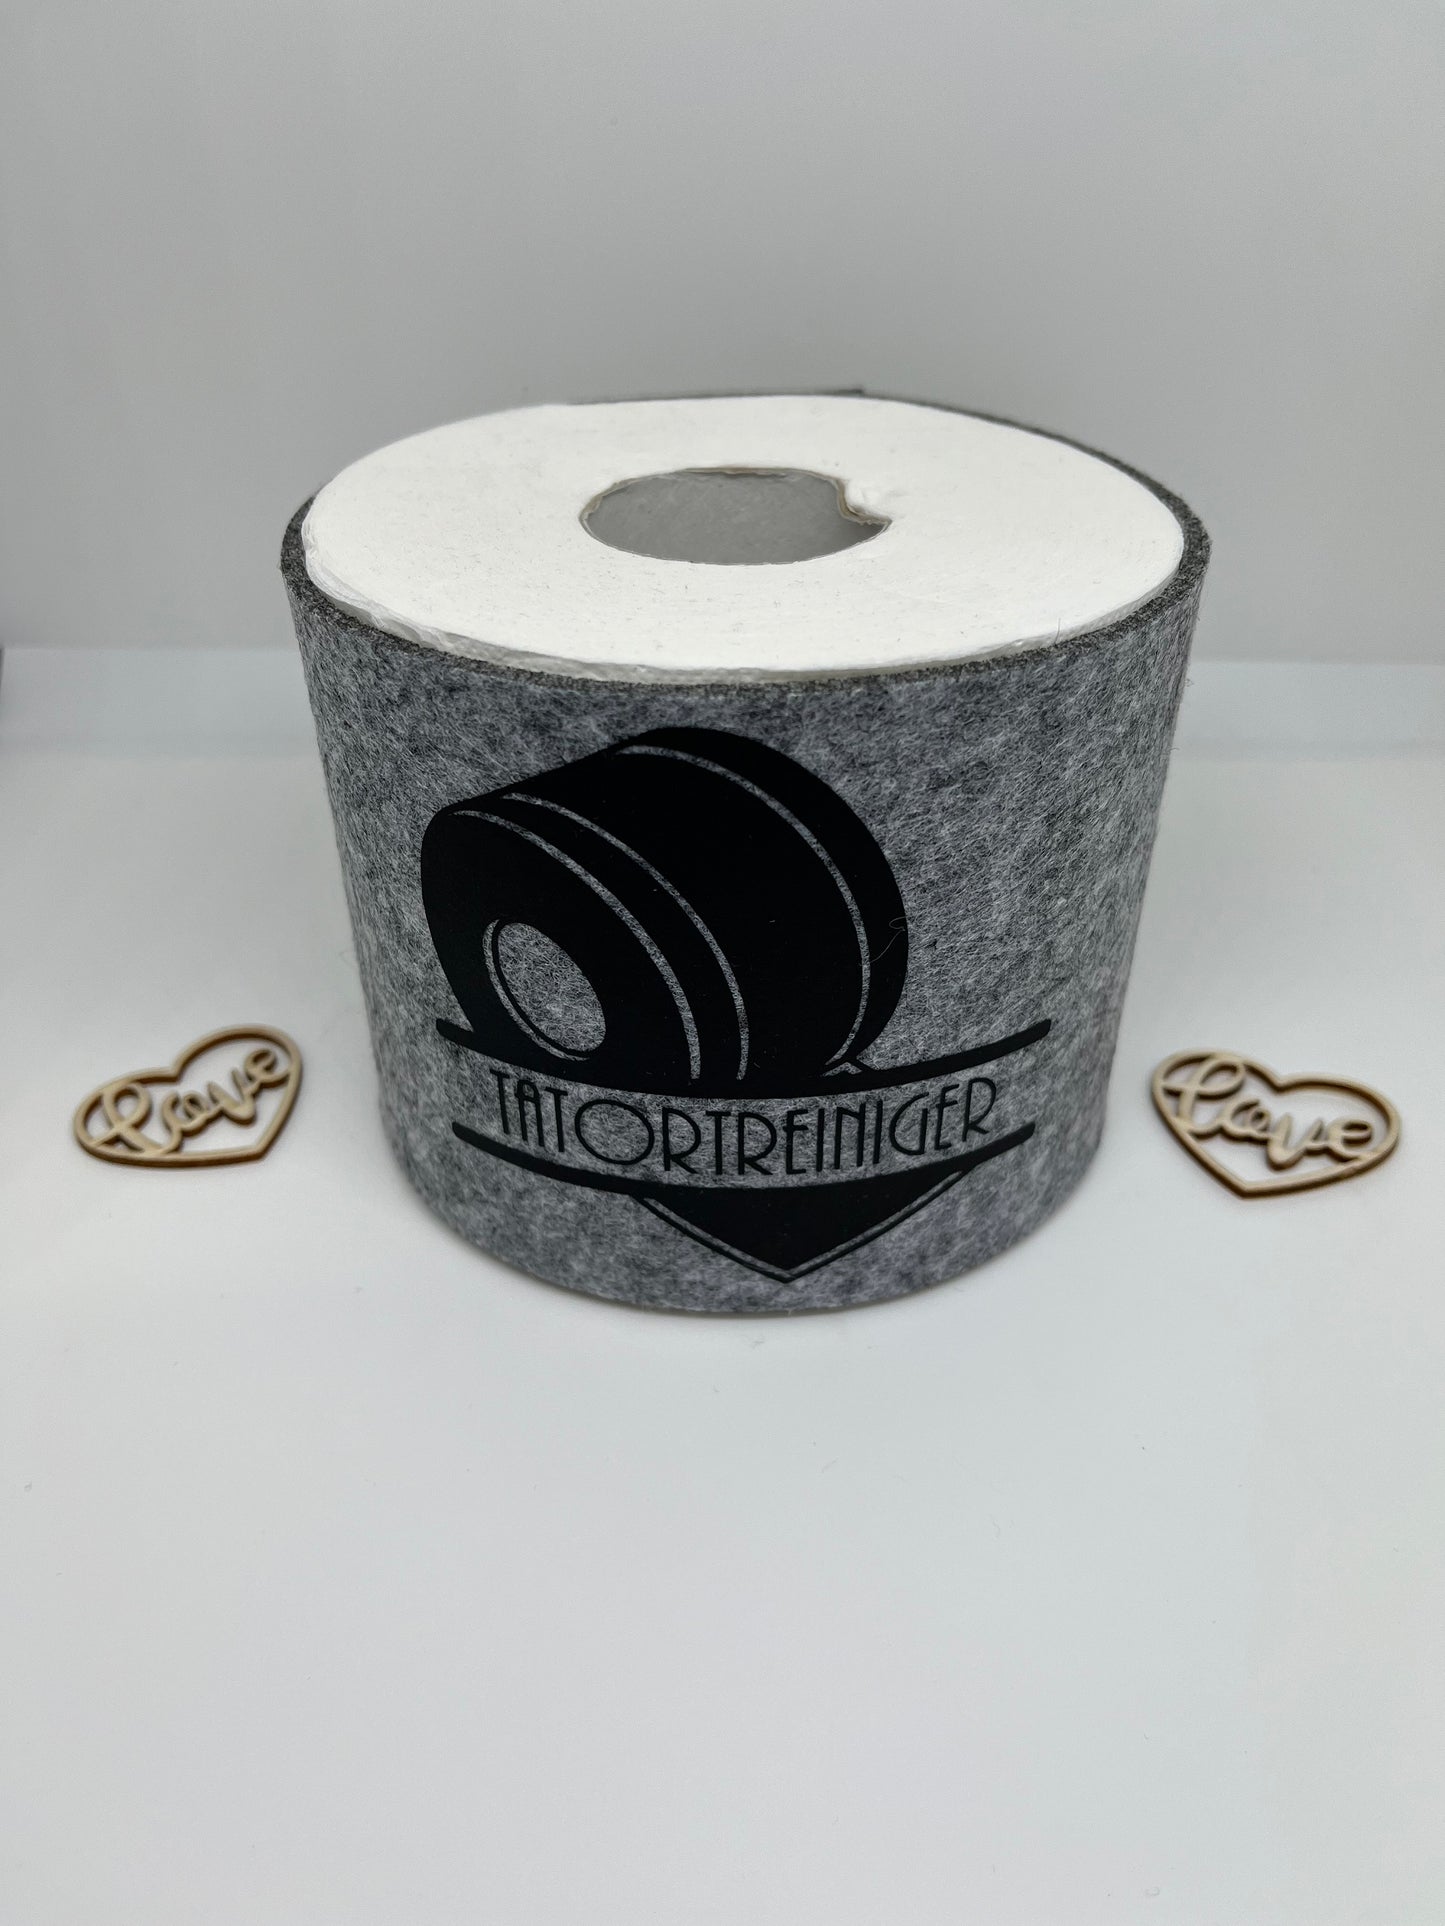 Filz Toilettenpapier-Cover grau meliert "Tatortreiniger"